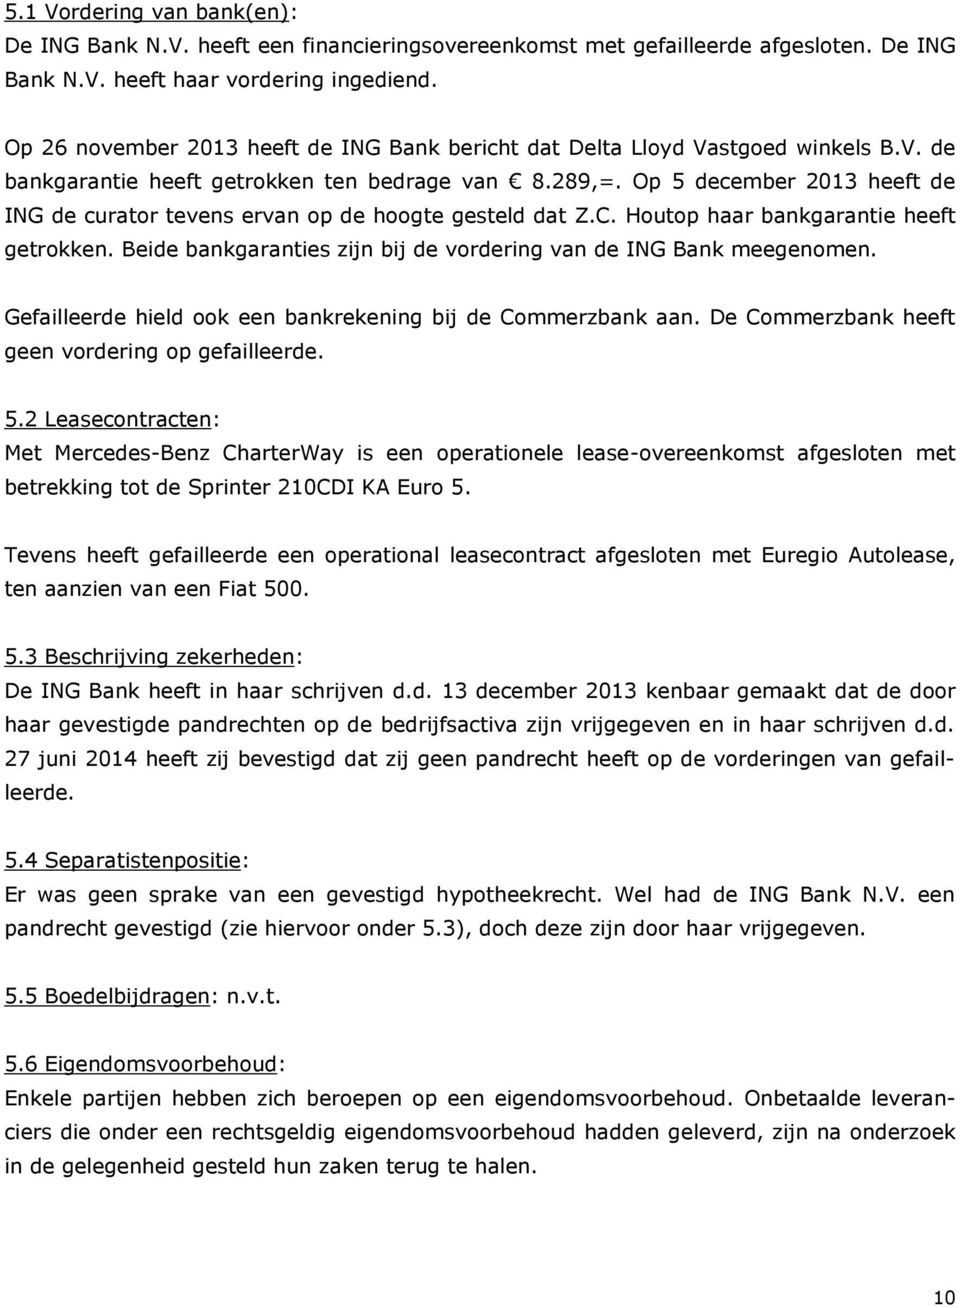 Op 5 december 2013 heeft de ING de curator tevens ervan op de hoogte gesteld dat Z.C. Houtop haar bankgarantie heeft getrokken. Beide bankgaranties zijn bij de vordering van de ING Bank meegenomen.